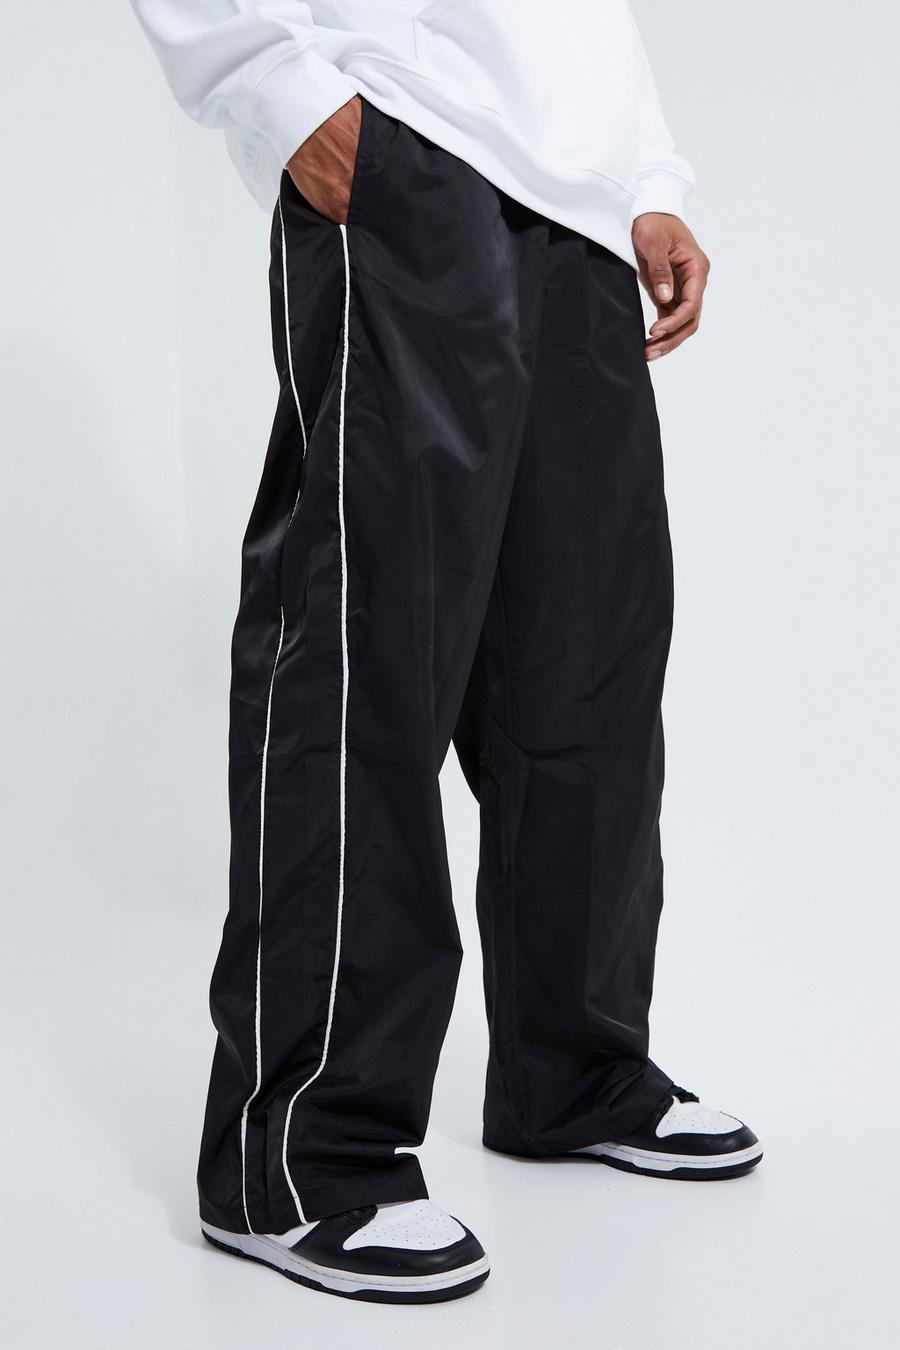 Pantaloni Smart ampi con laccetti, Black negro